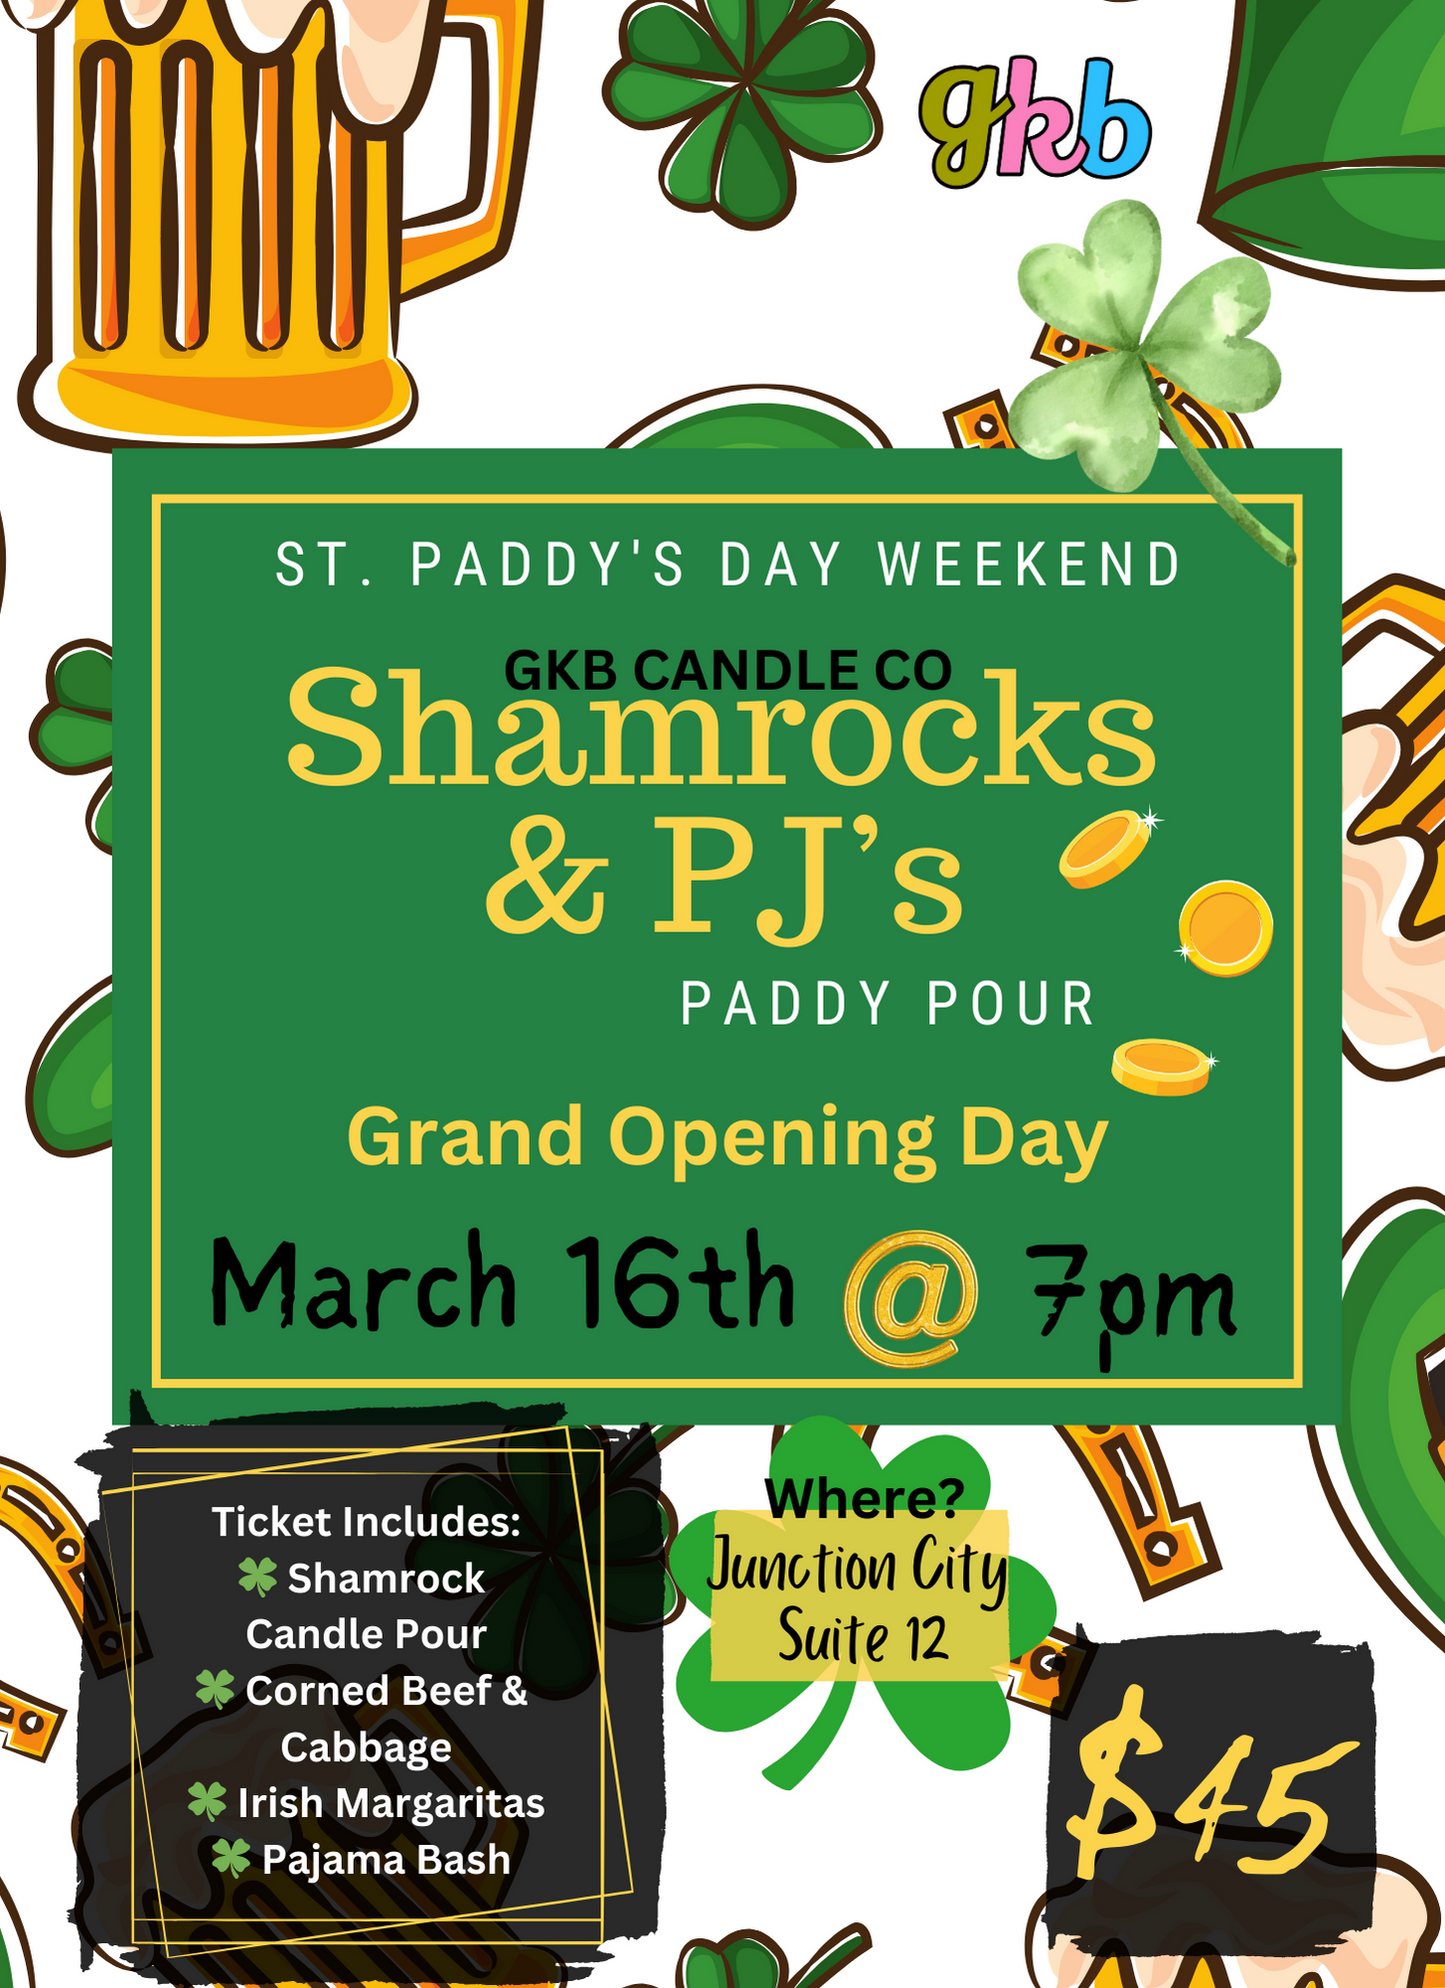 Shamrocks & PJ’s Paddy Pour